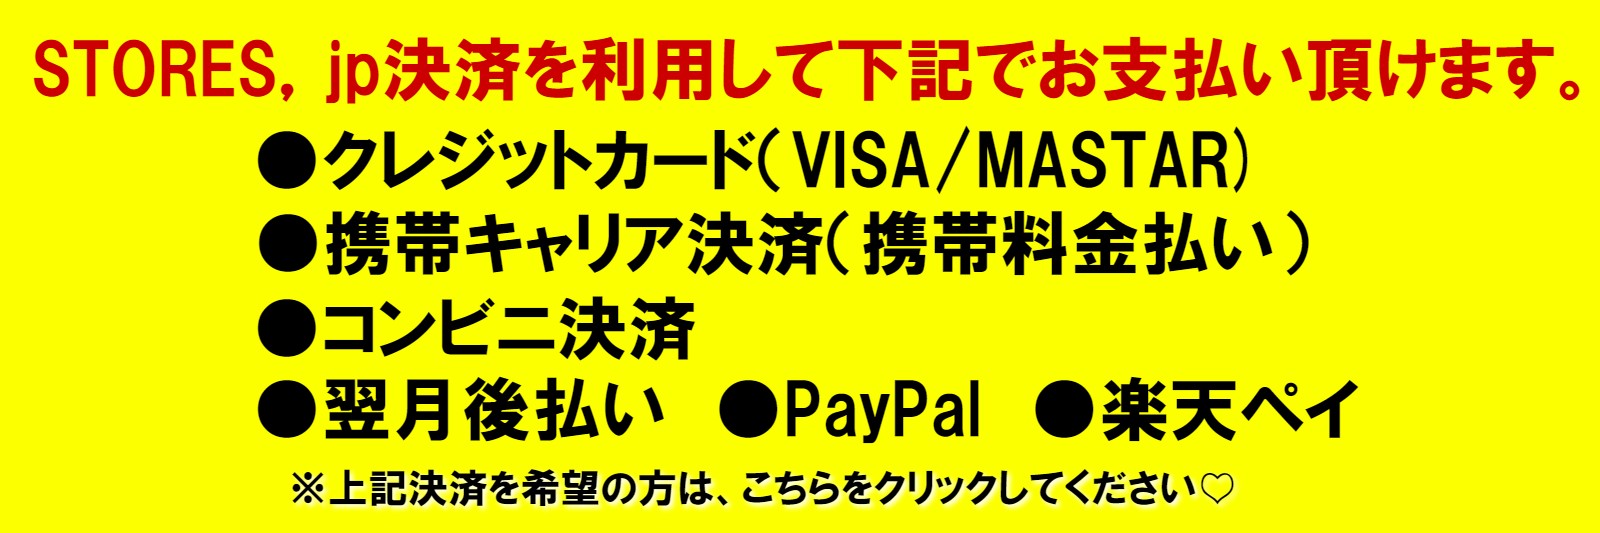 LINE対面占いは、STORES.jpを利用して、「クレジットカード（VISA・MASTAR）・携帯キャリア決済・コンビニ決済・翌月後支払い・PayPal・楽天ペイ」でもお支払いが出来ます